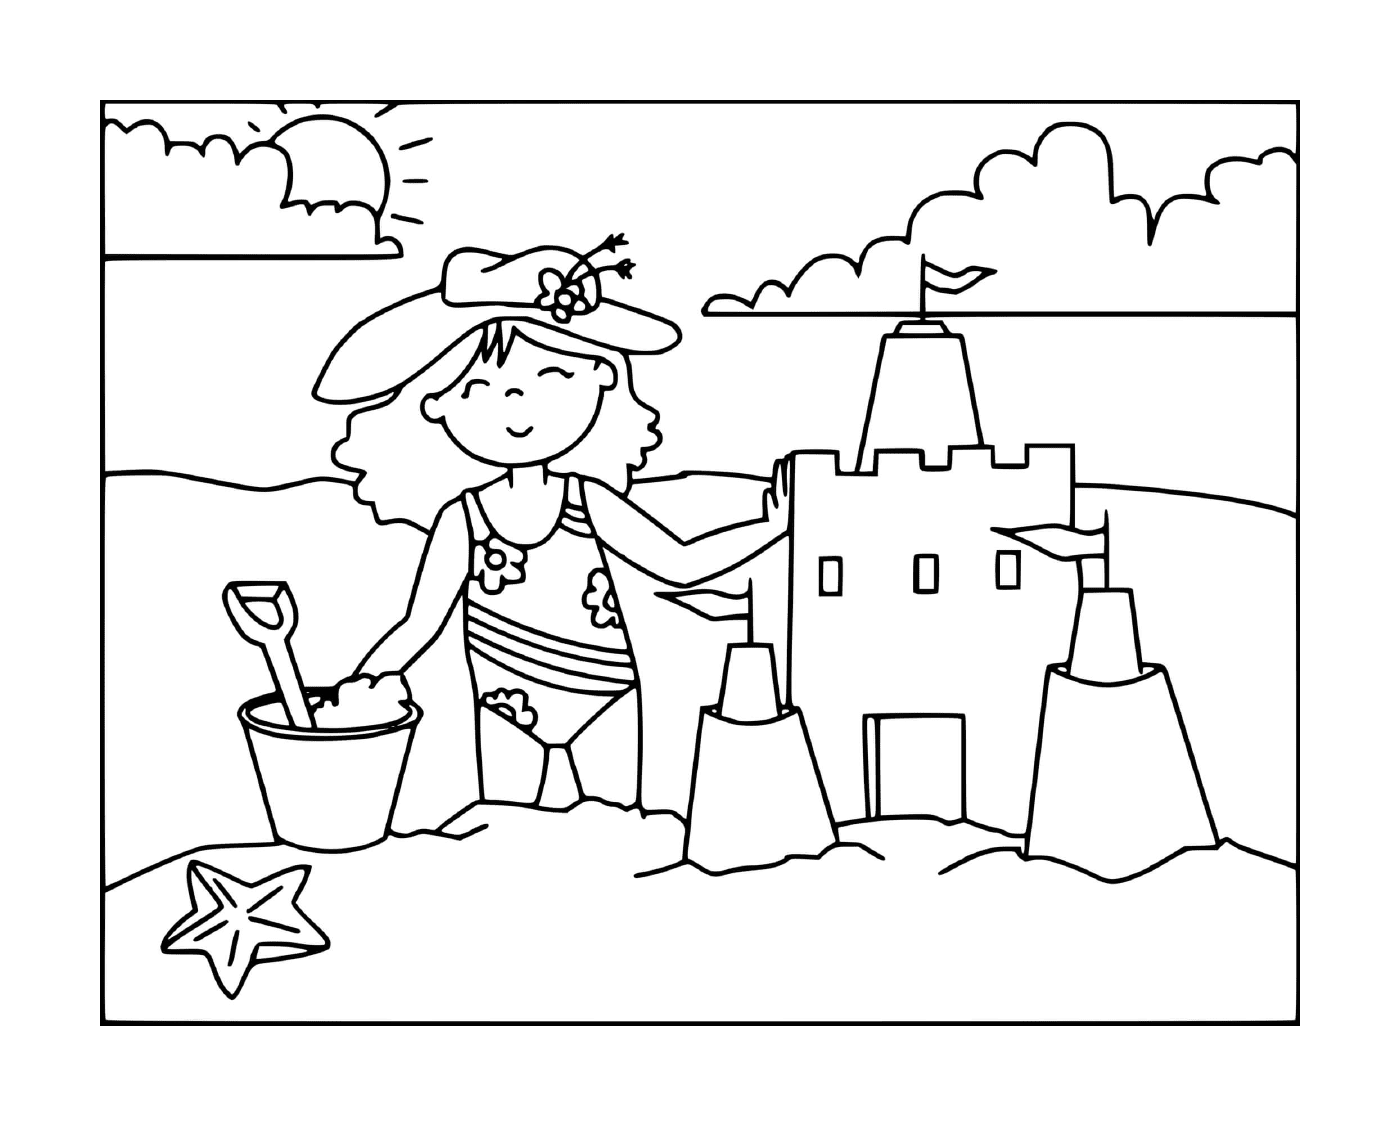  Una chica construye un castillo de arena en la playa 